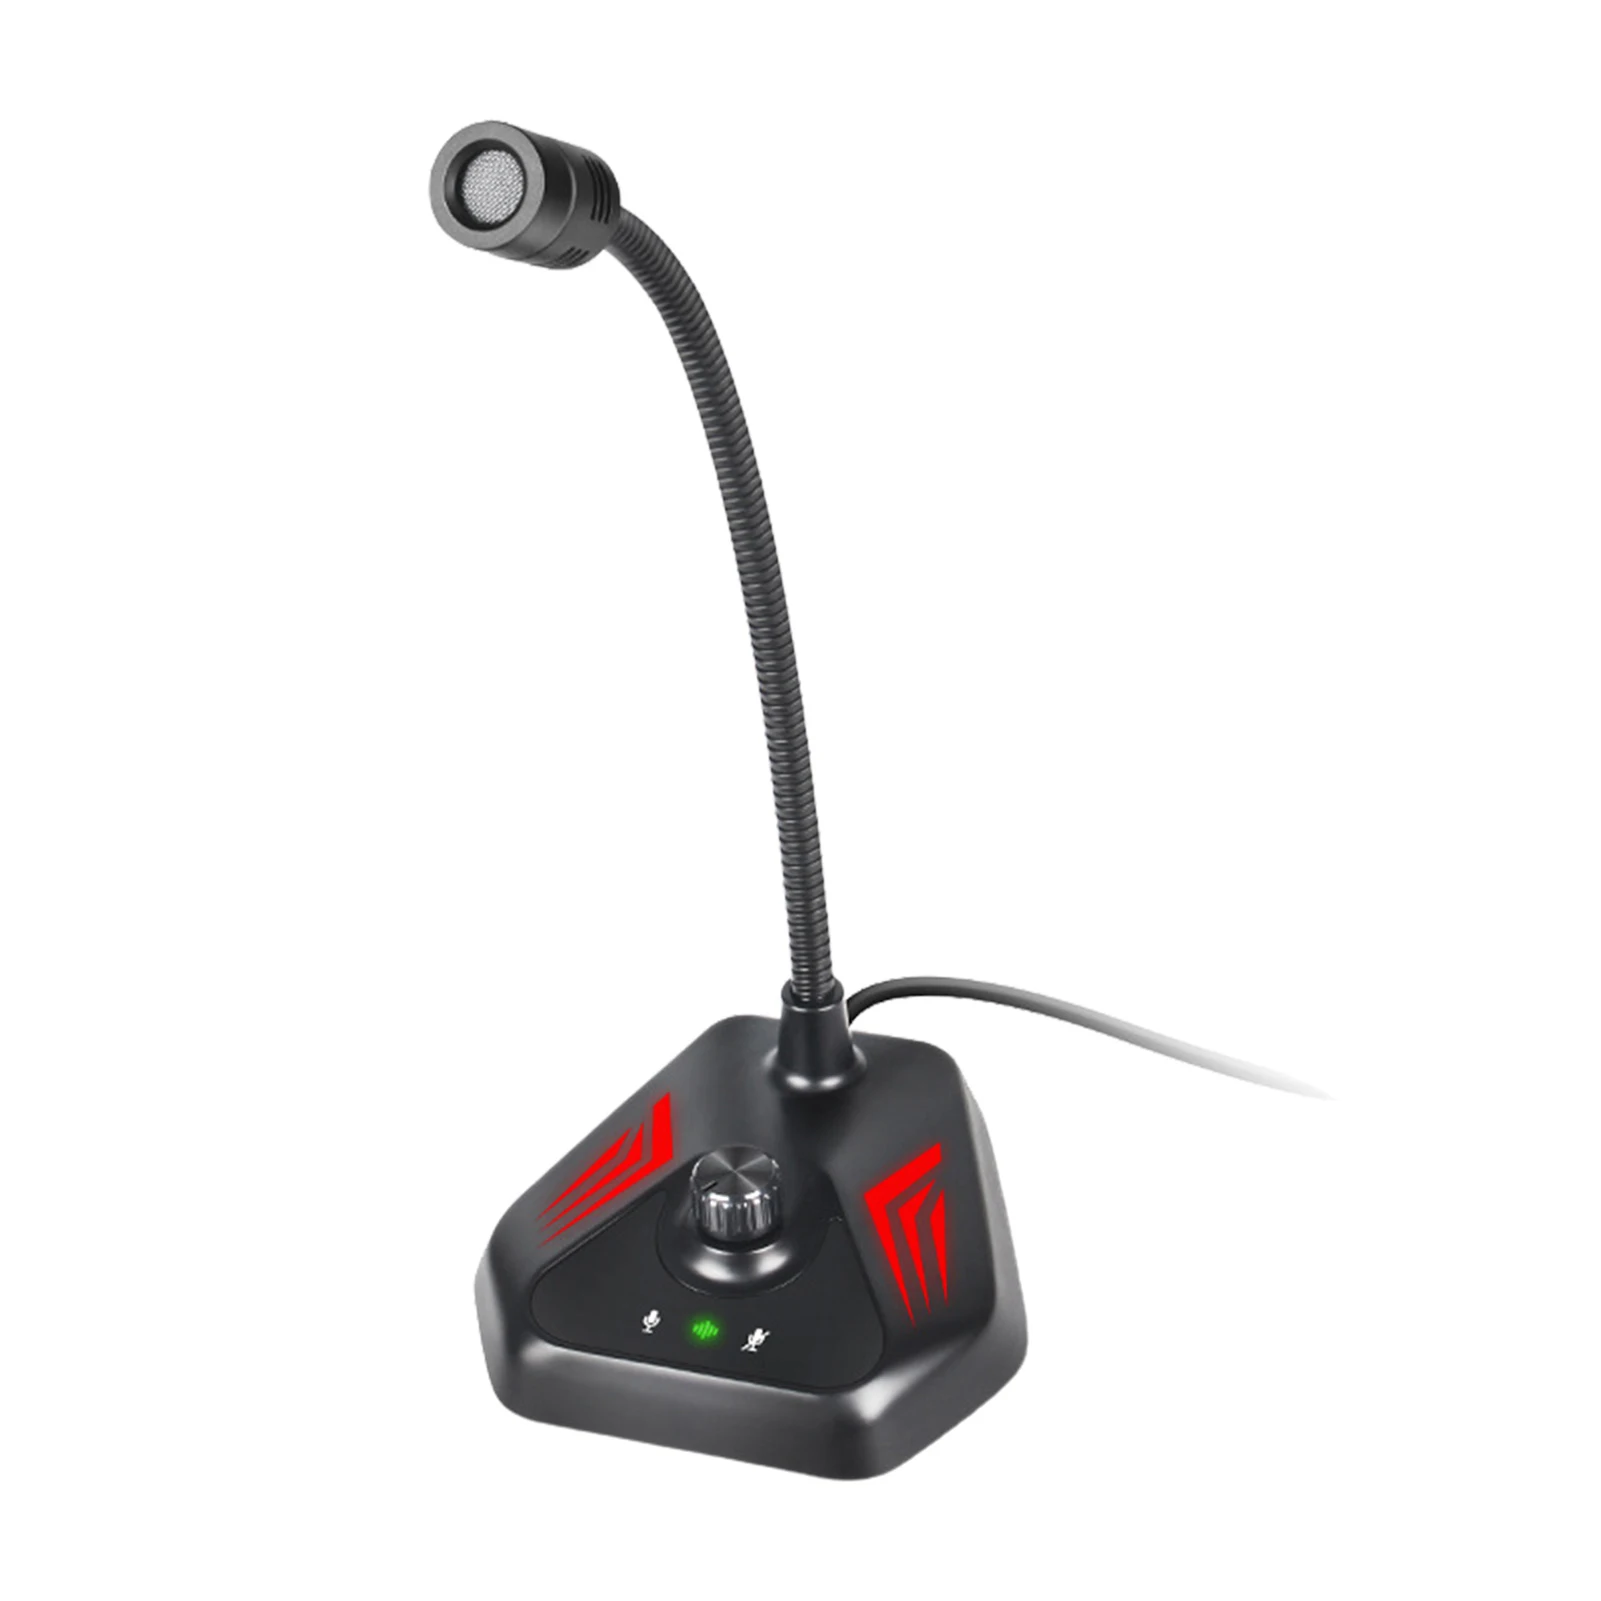 

Компьютерный микрофон RGB с USB-портом, микрофон для ПК с эффектом RGB и беззвучной кнопкой, идеально подходит для игр, встреч, прямых трансляций